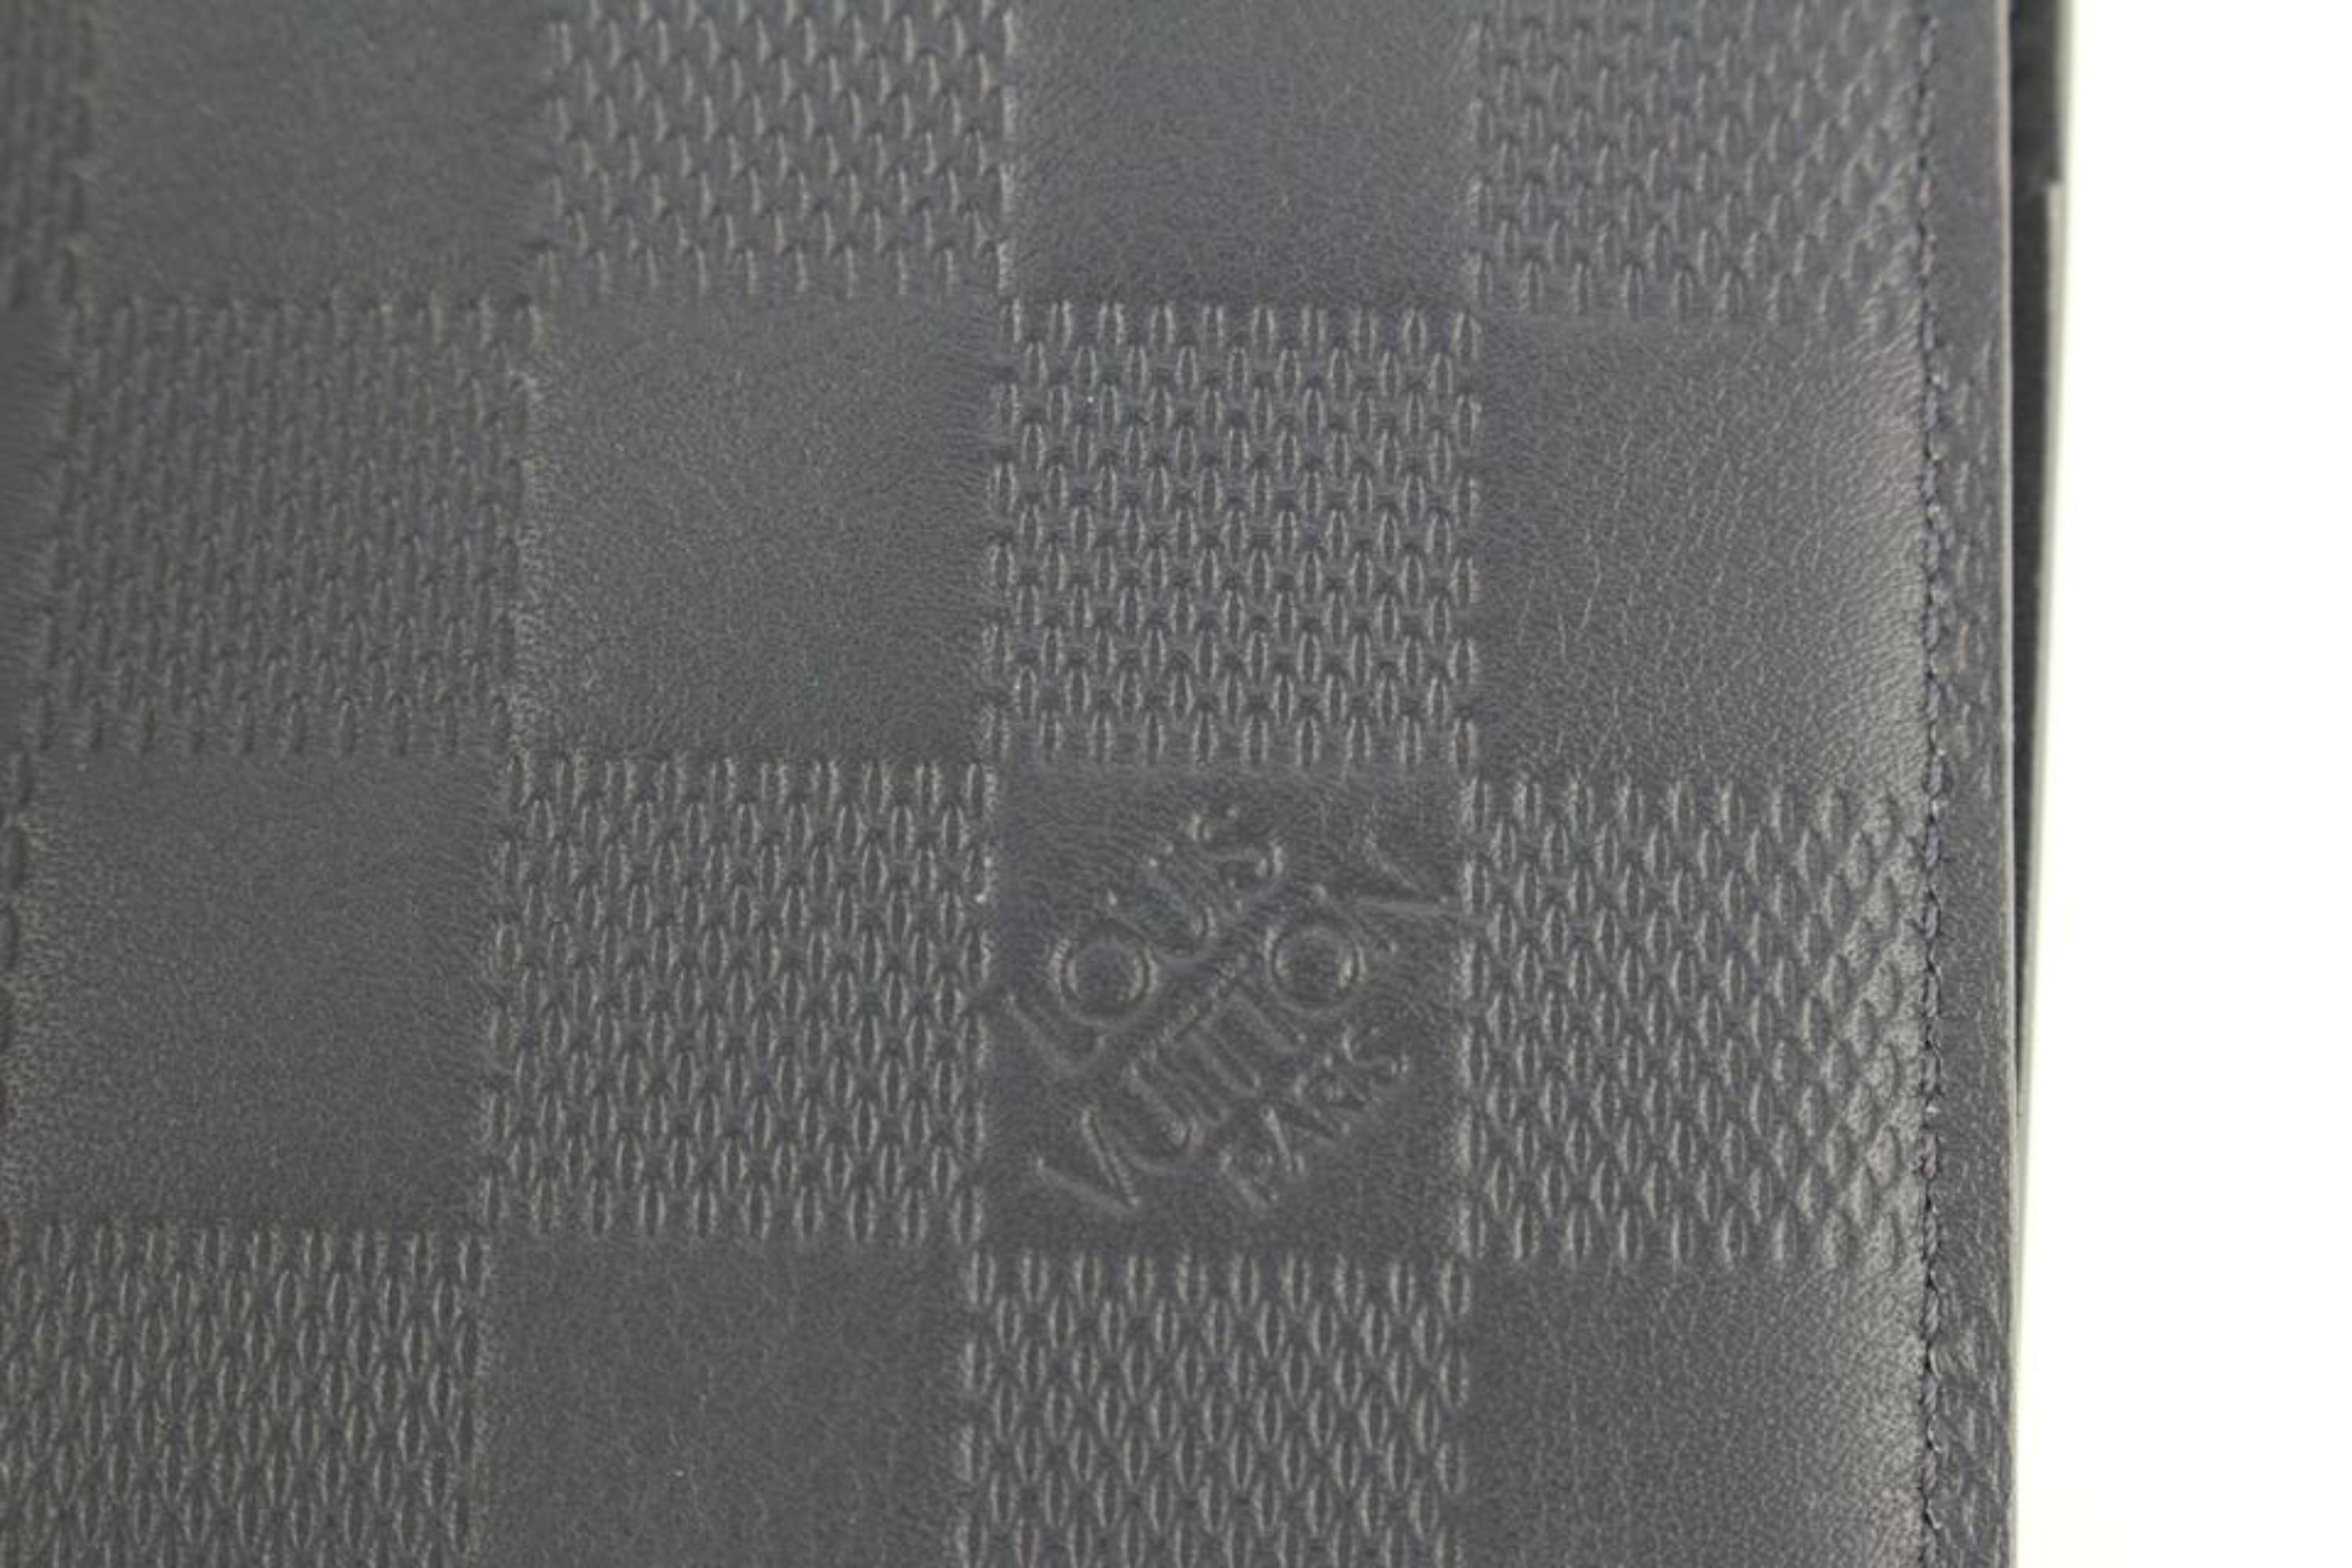 Walletin Black LV Design PU Leather Wallet For Men